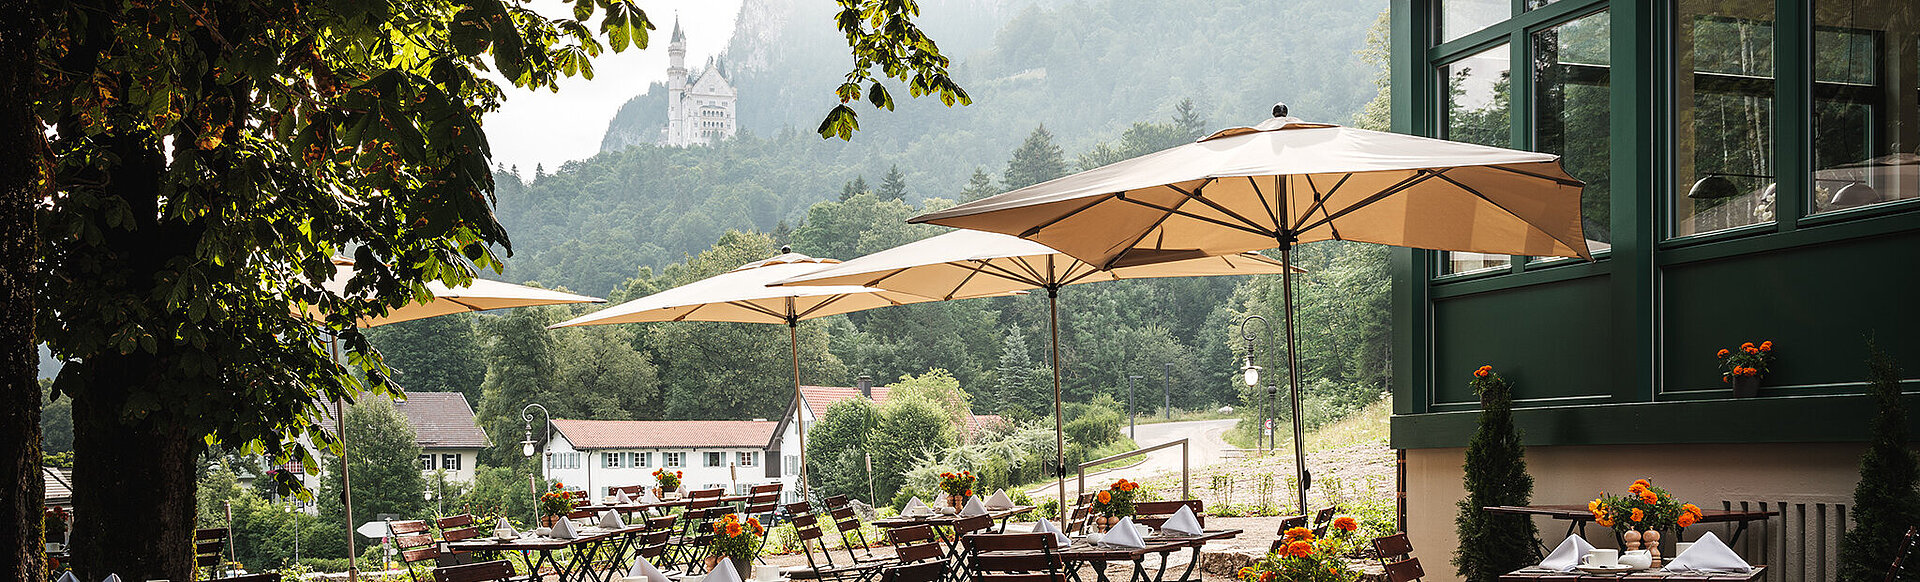 AMERON Neuschwanstein Alpsee Resort & Spa Restaurant Lisl Terrasse